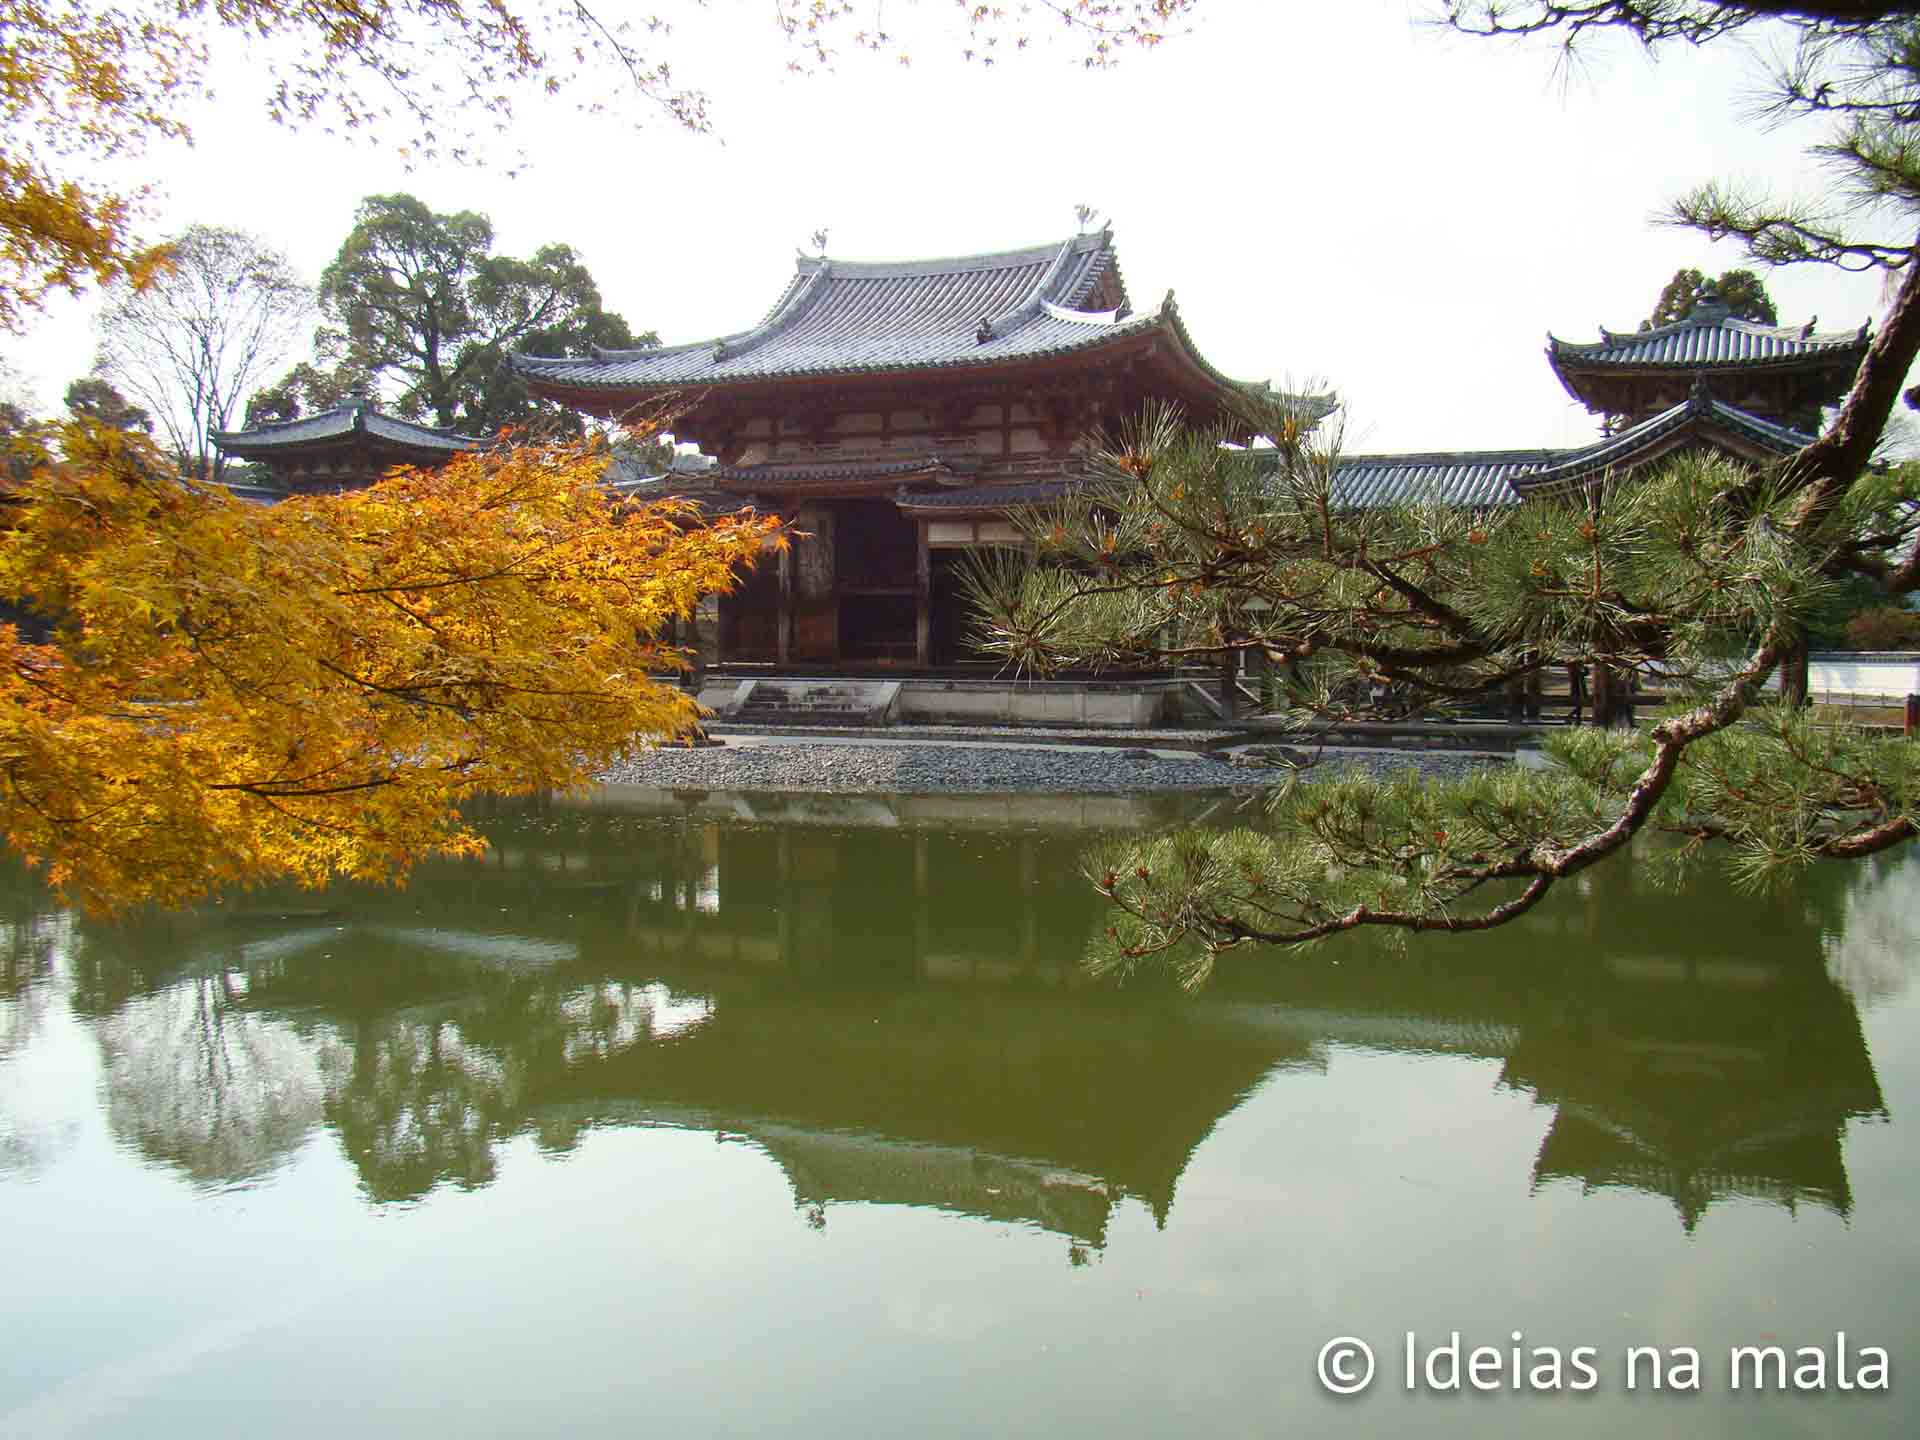 vale a pena visitar o Templo Byodoin em uji no japão